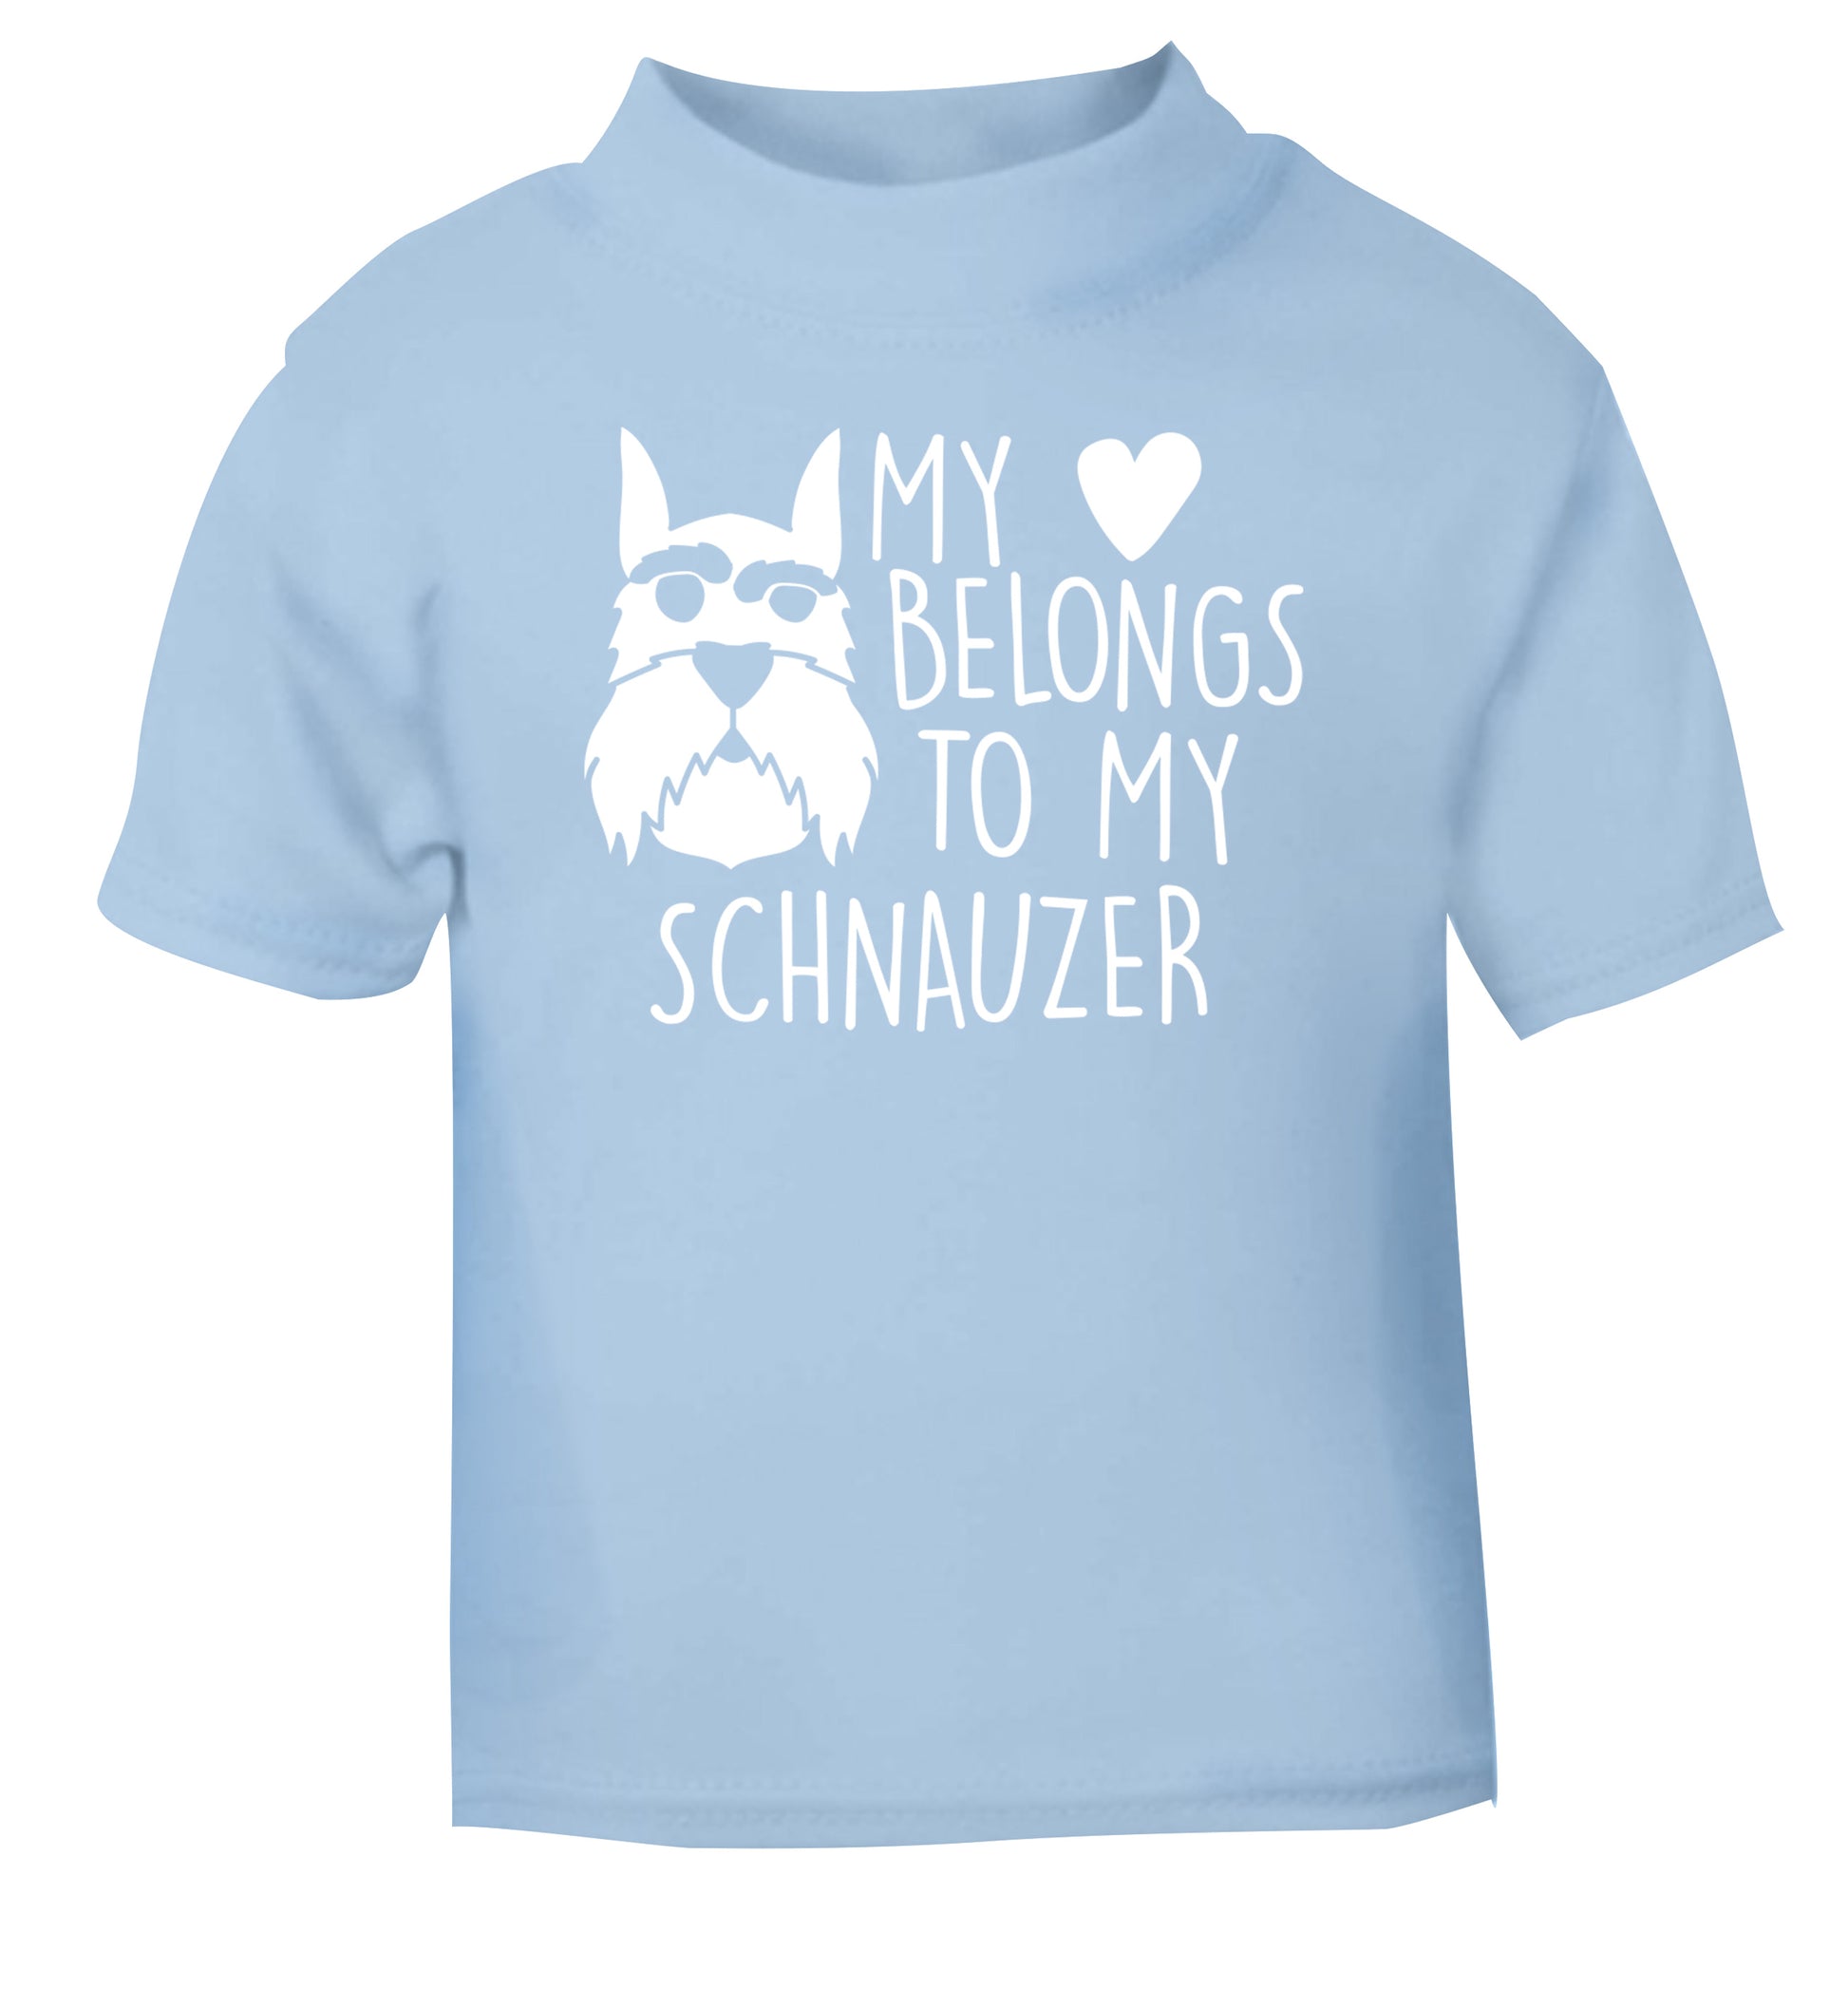 My heart belongs to my schnauzer light blue Baby Toddler Tshirt 2 Years